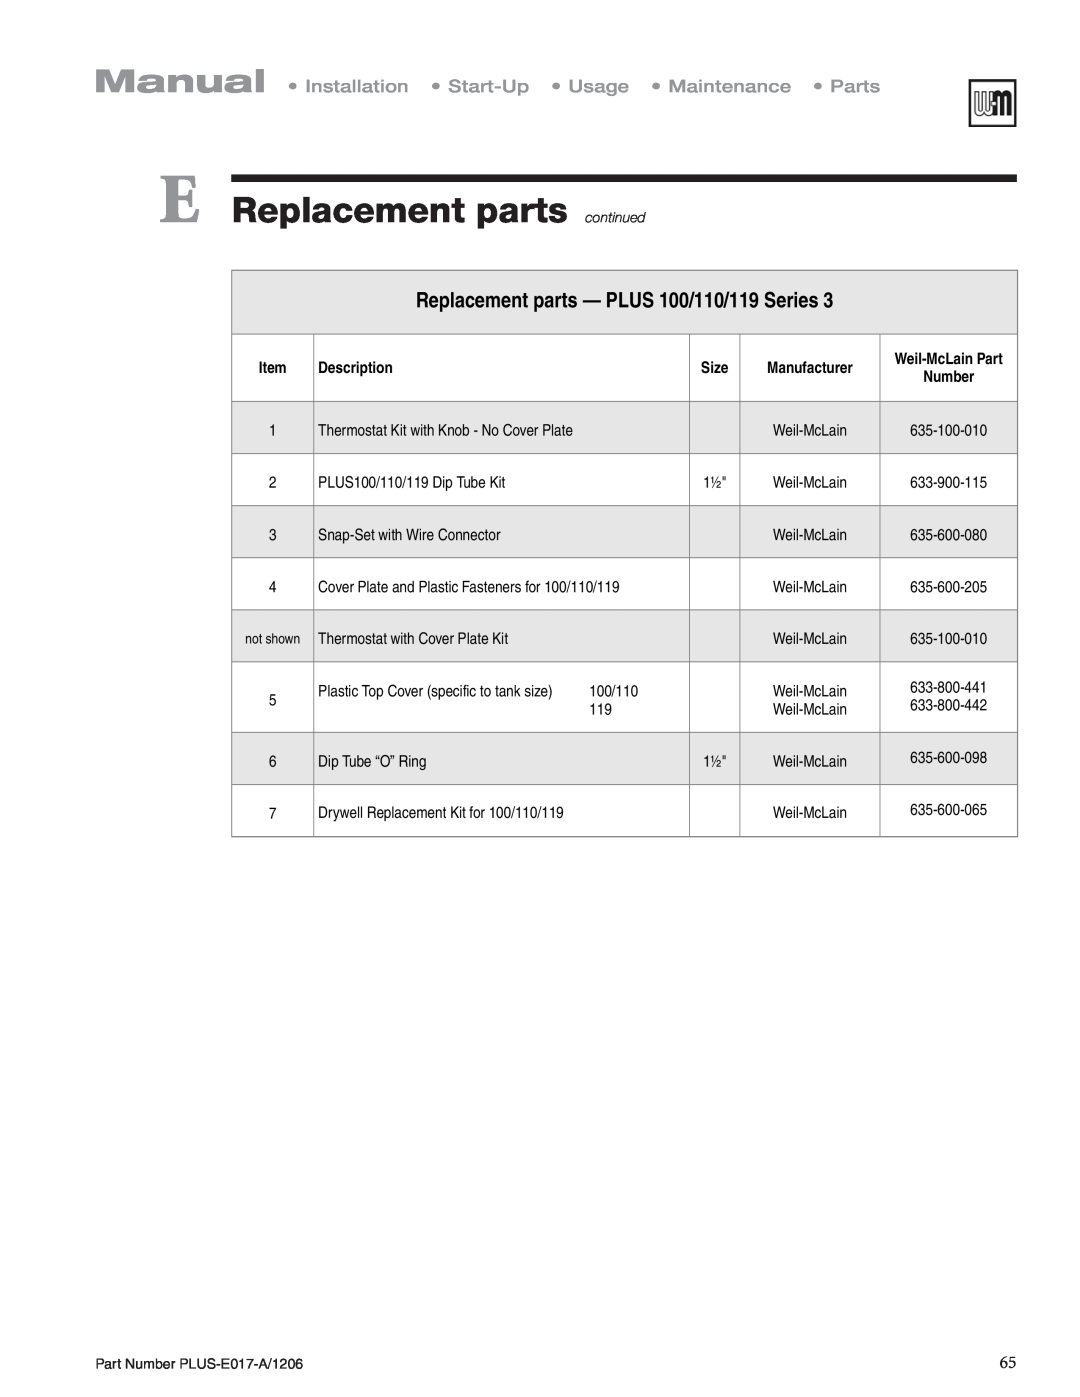 Weil-McLain PLUS-E017-A/1206 Replacement parts - PLUS 100/110/119 Series, E Replacement parts continued, Description, Size 